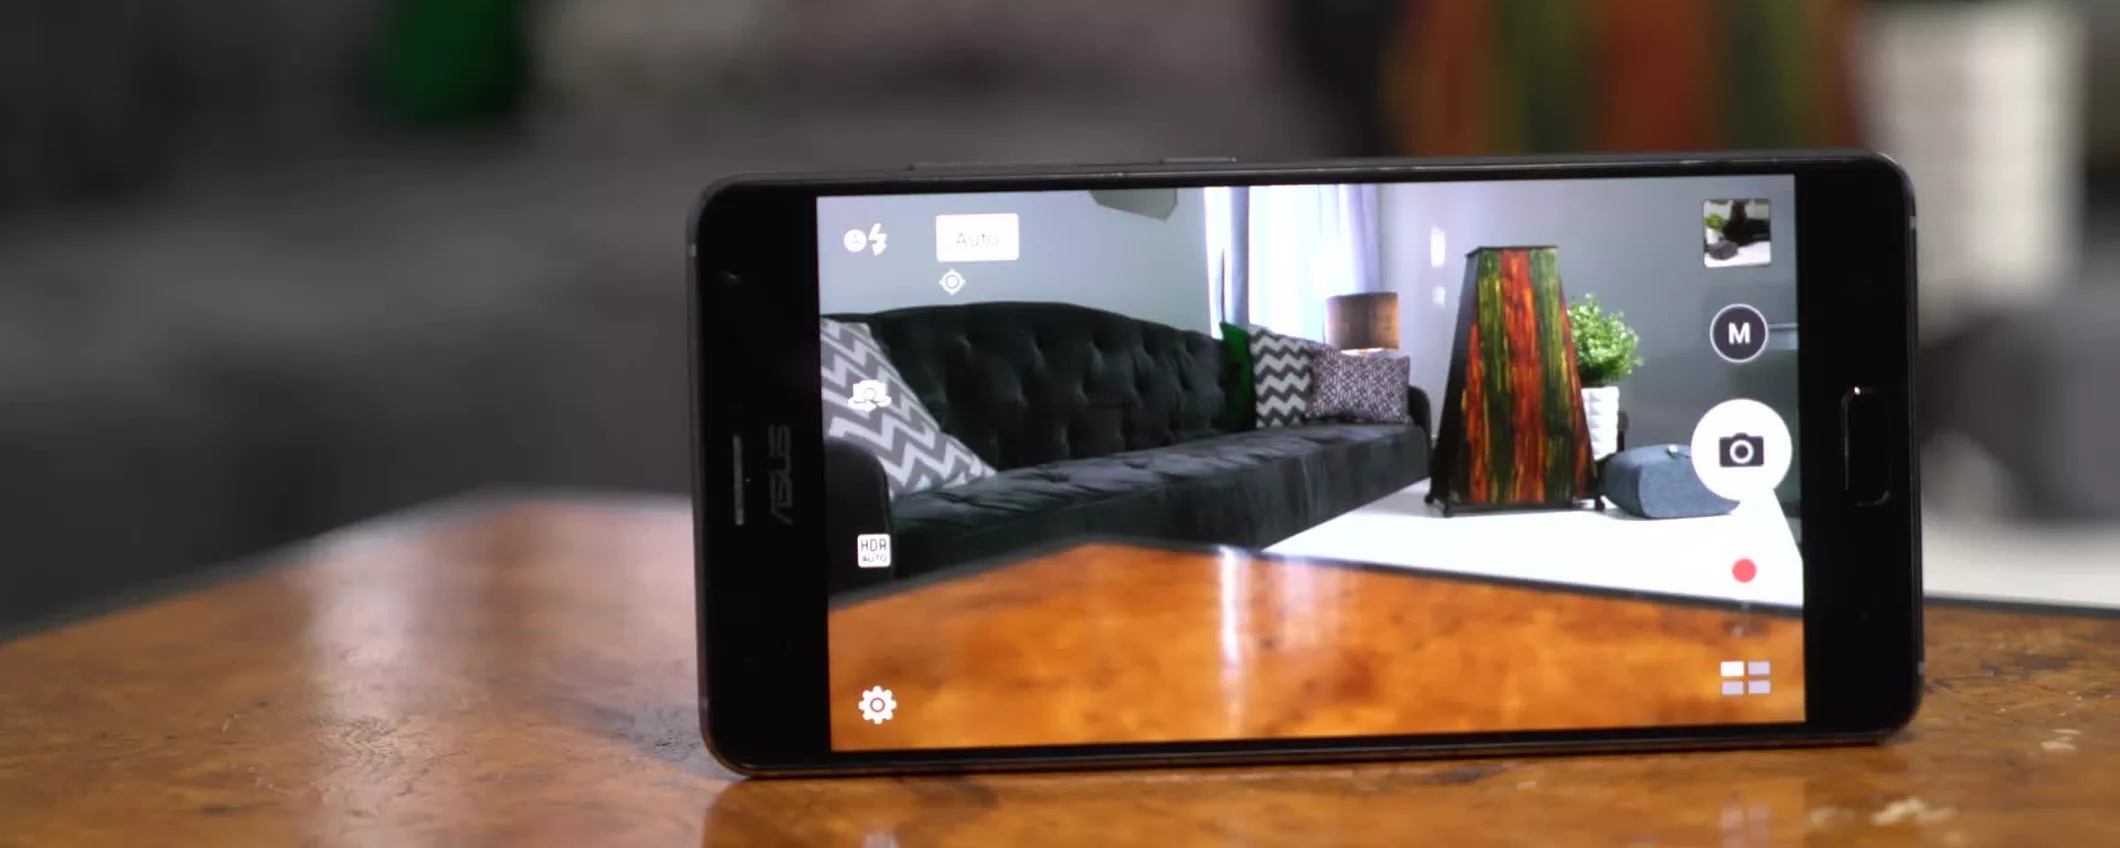 ASUS ZenFone AR: realtà aumentata e virtuale